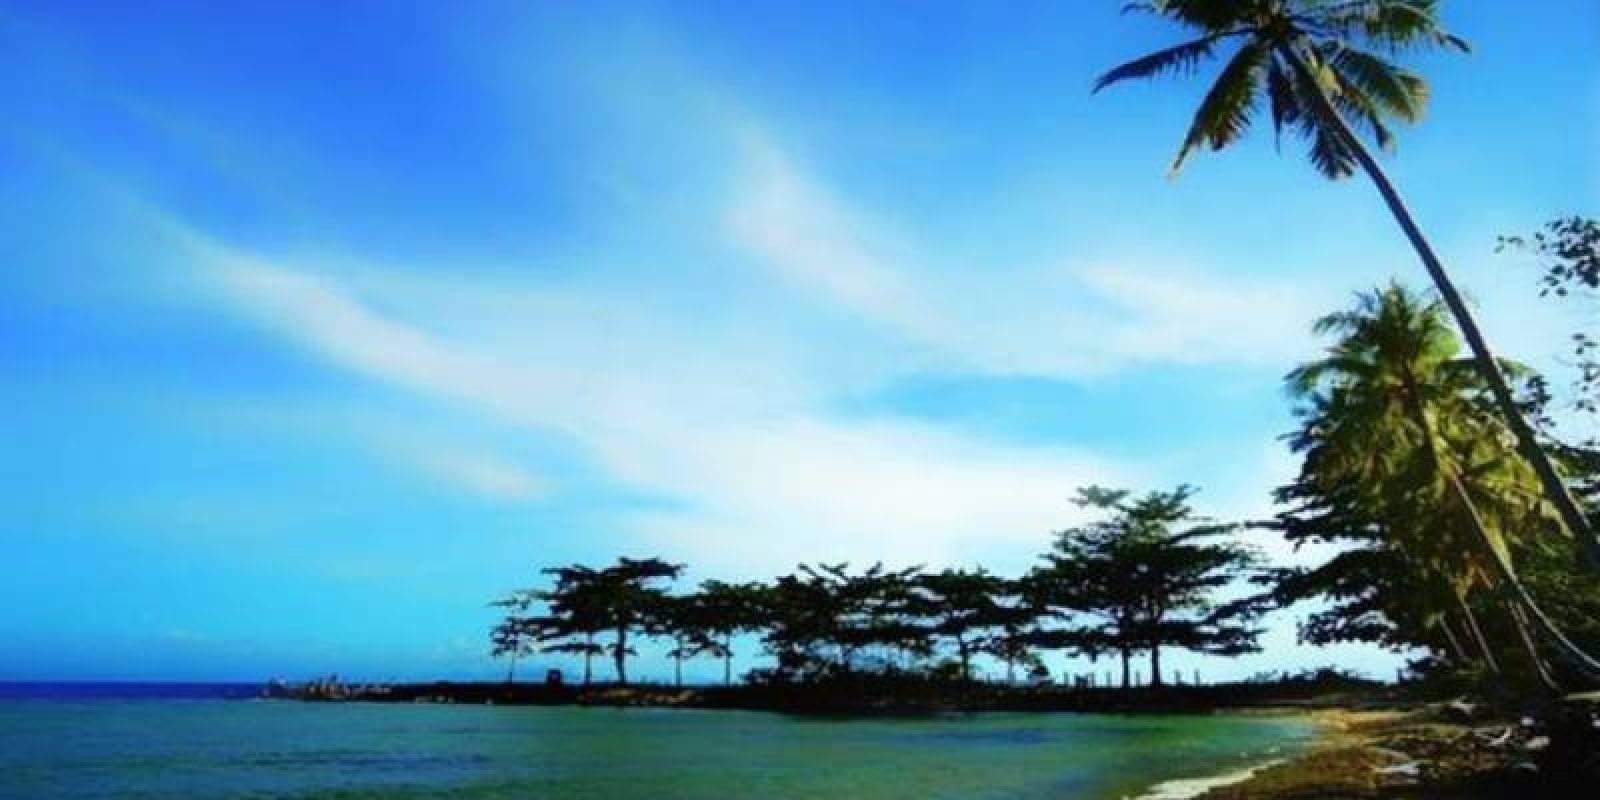 10 Wisata Pantai Di Pulau Biak Yang Bagus & Hits